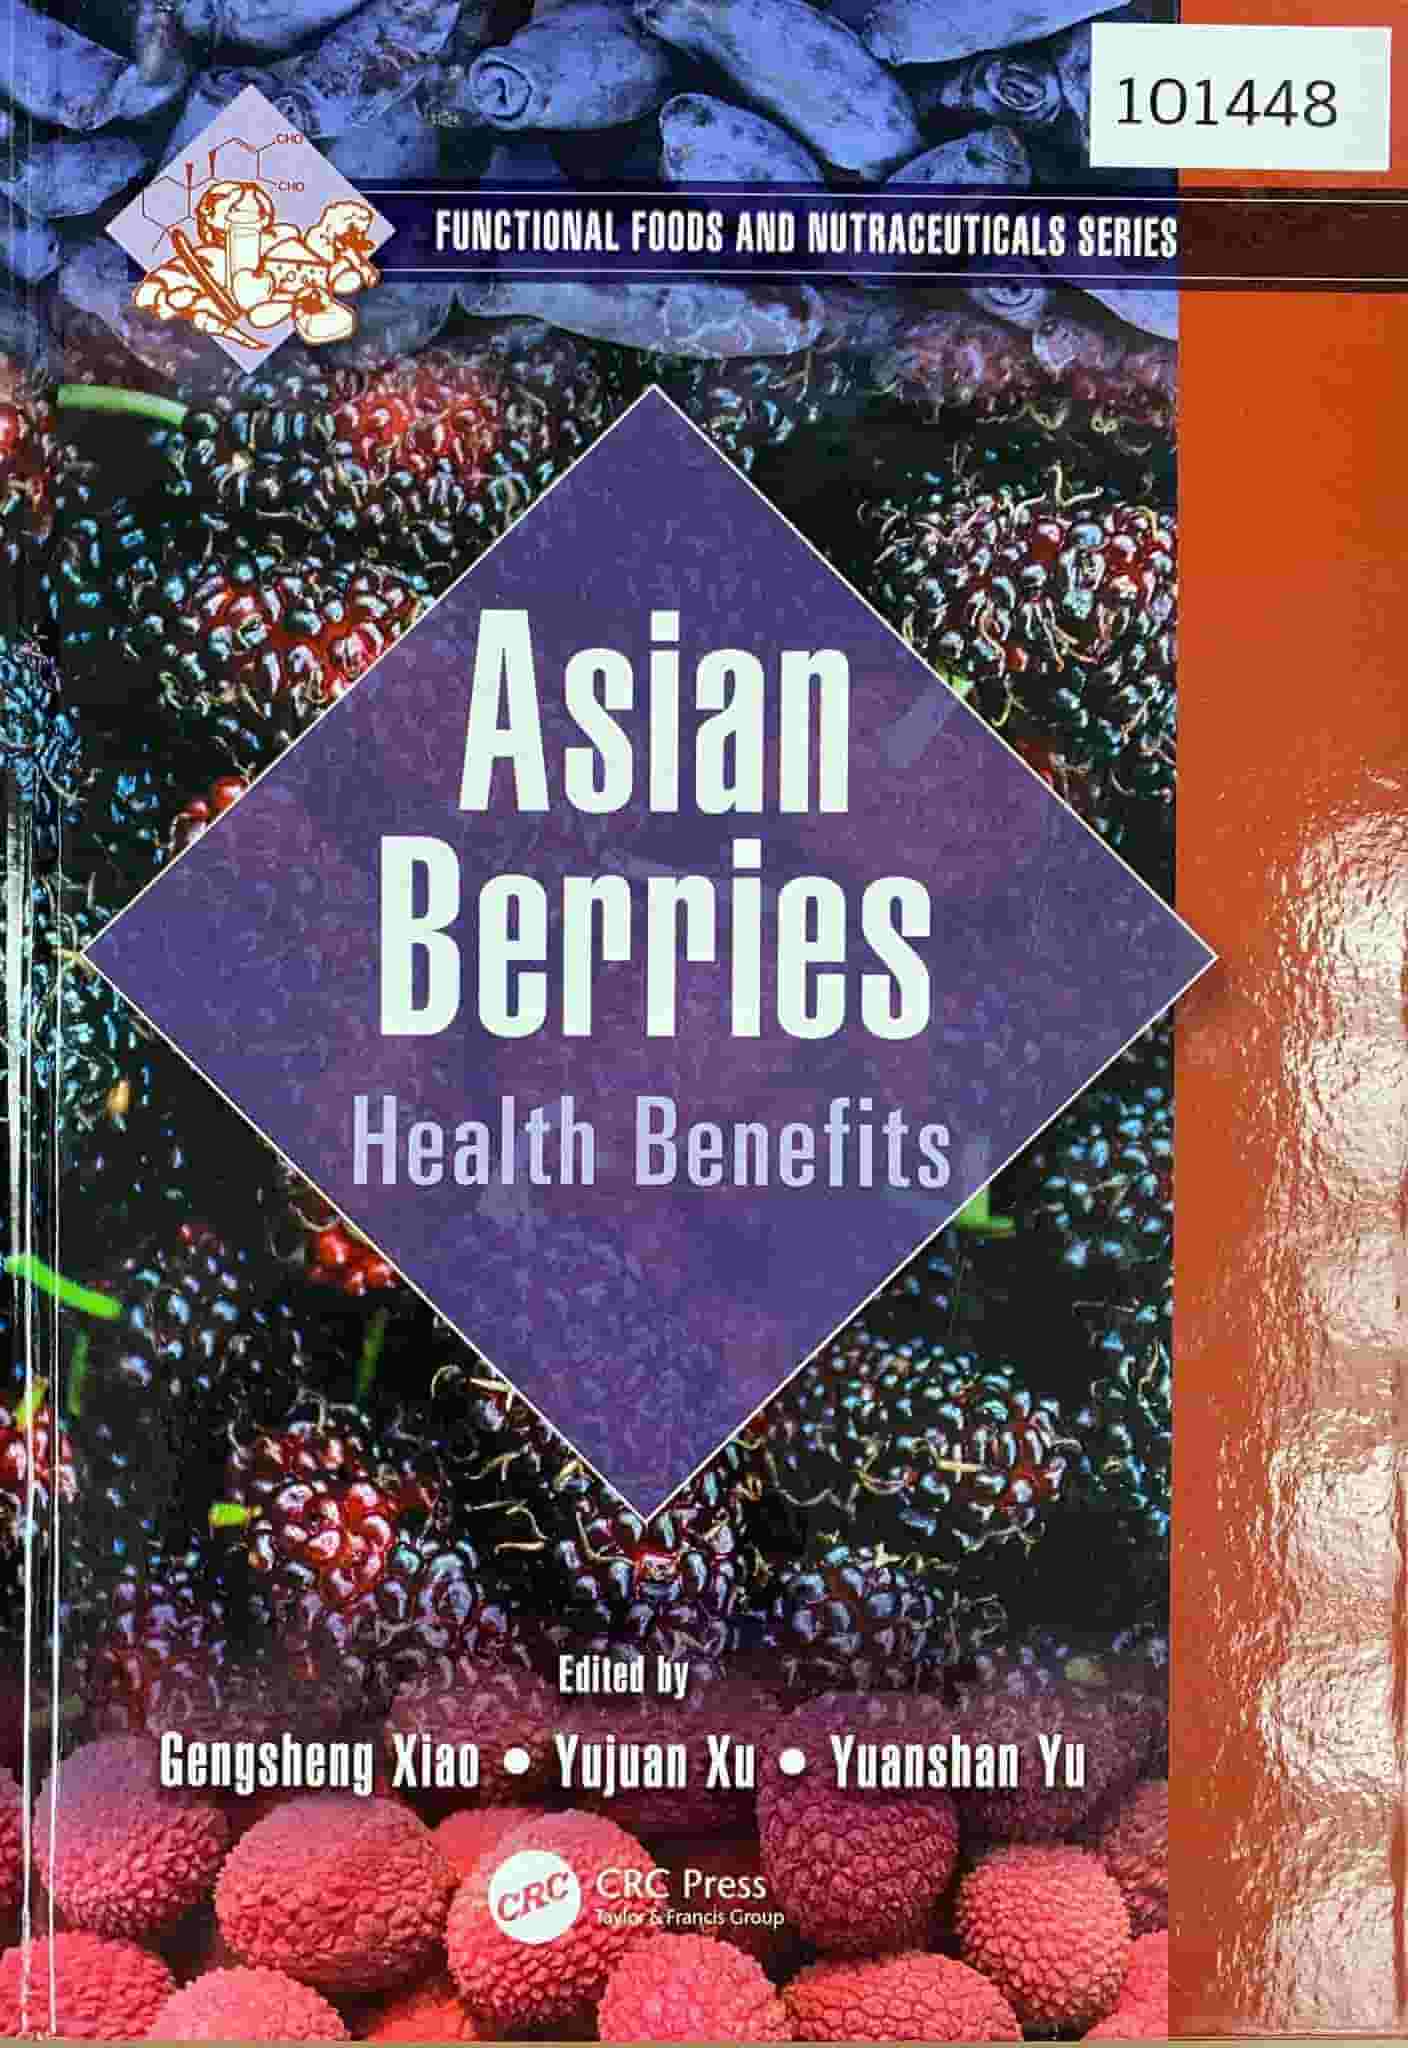 Asian berries: health benefits